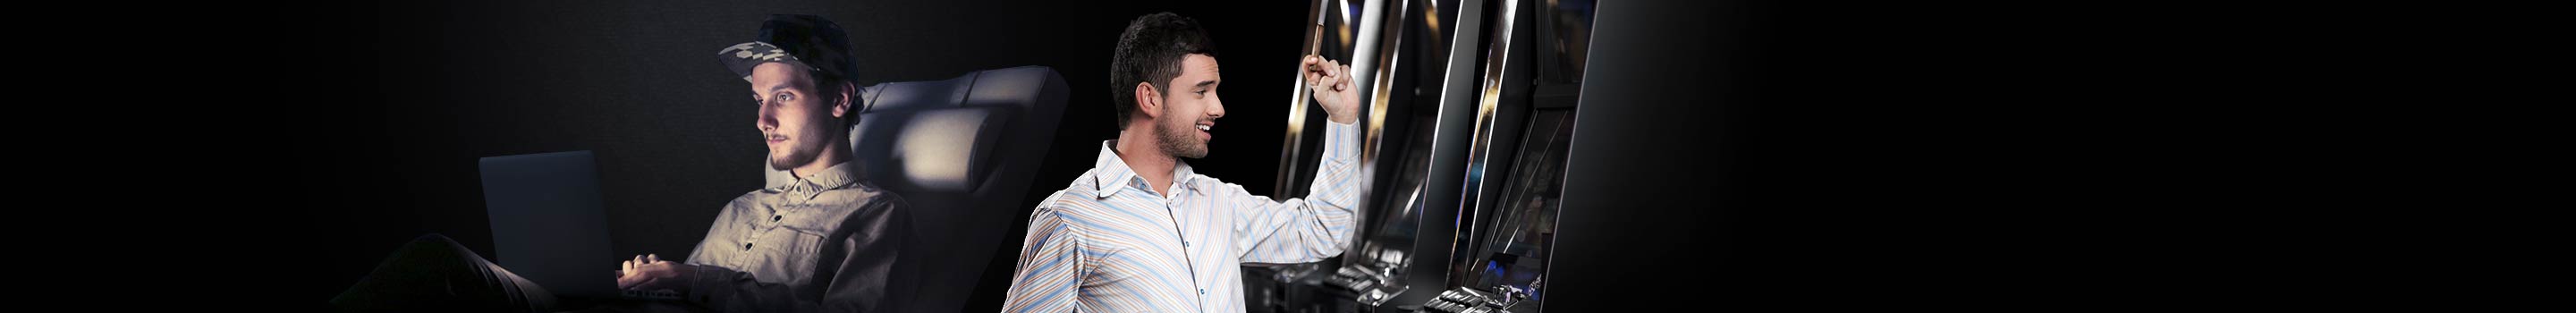 Online-Automaten und den Slots in echten Casinos